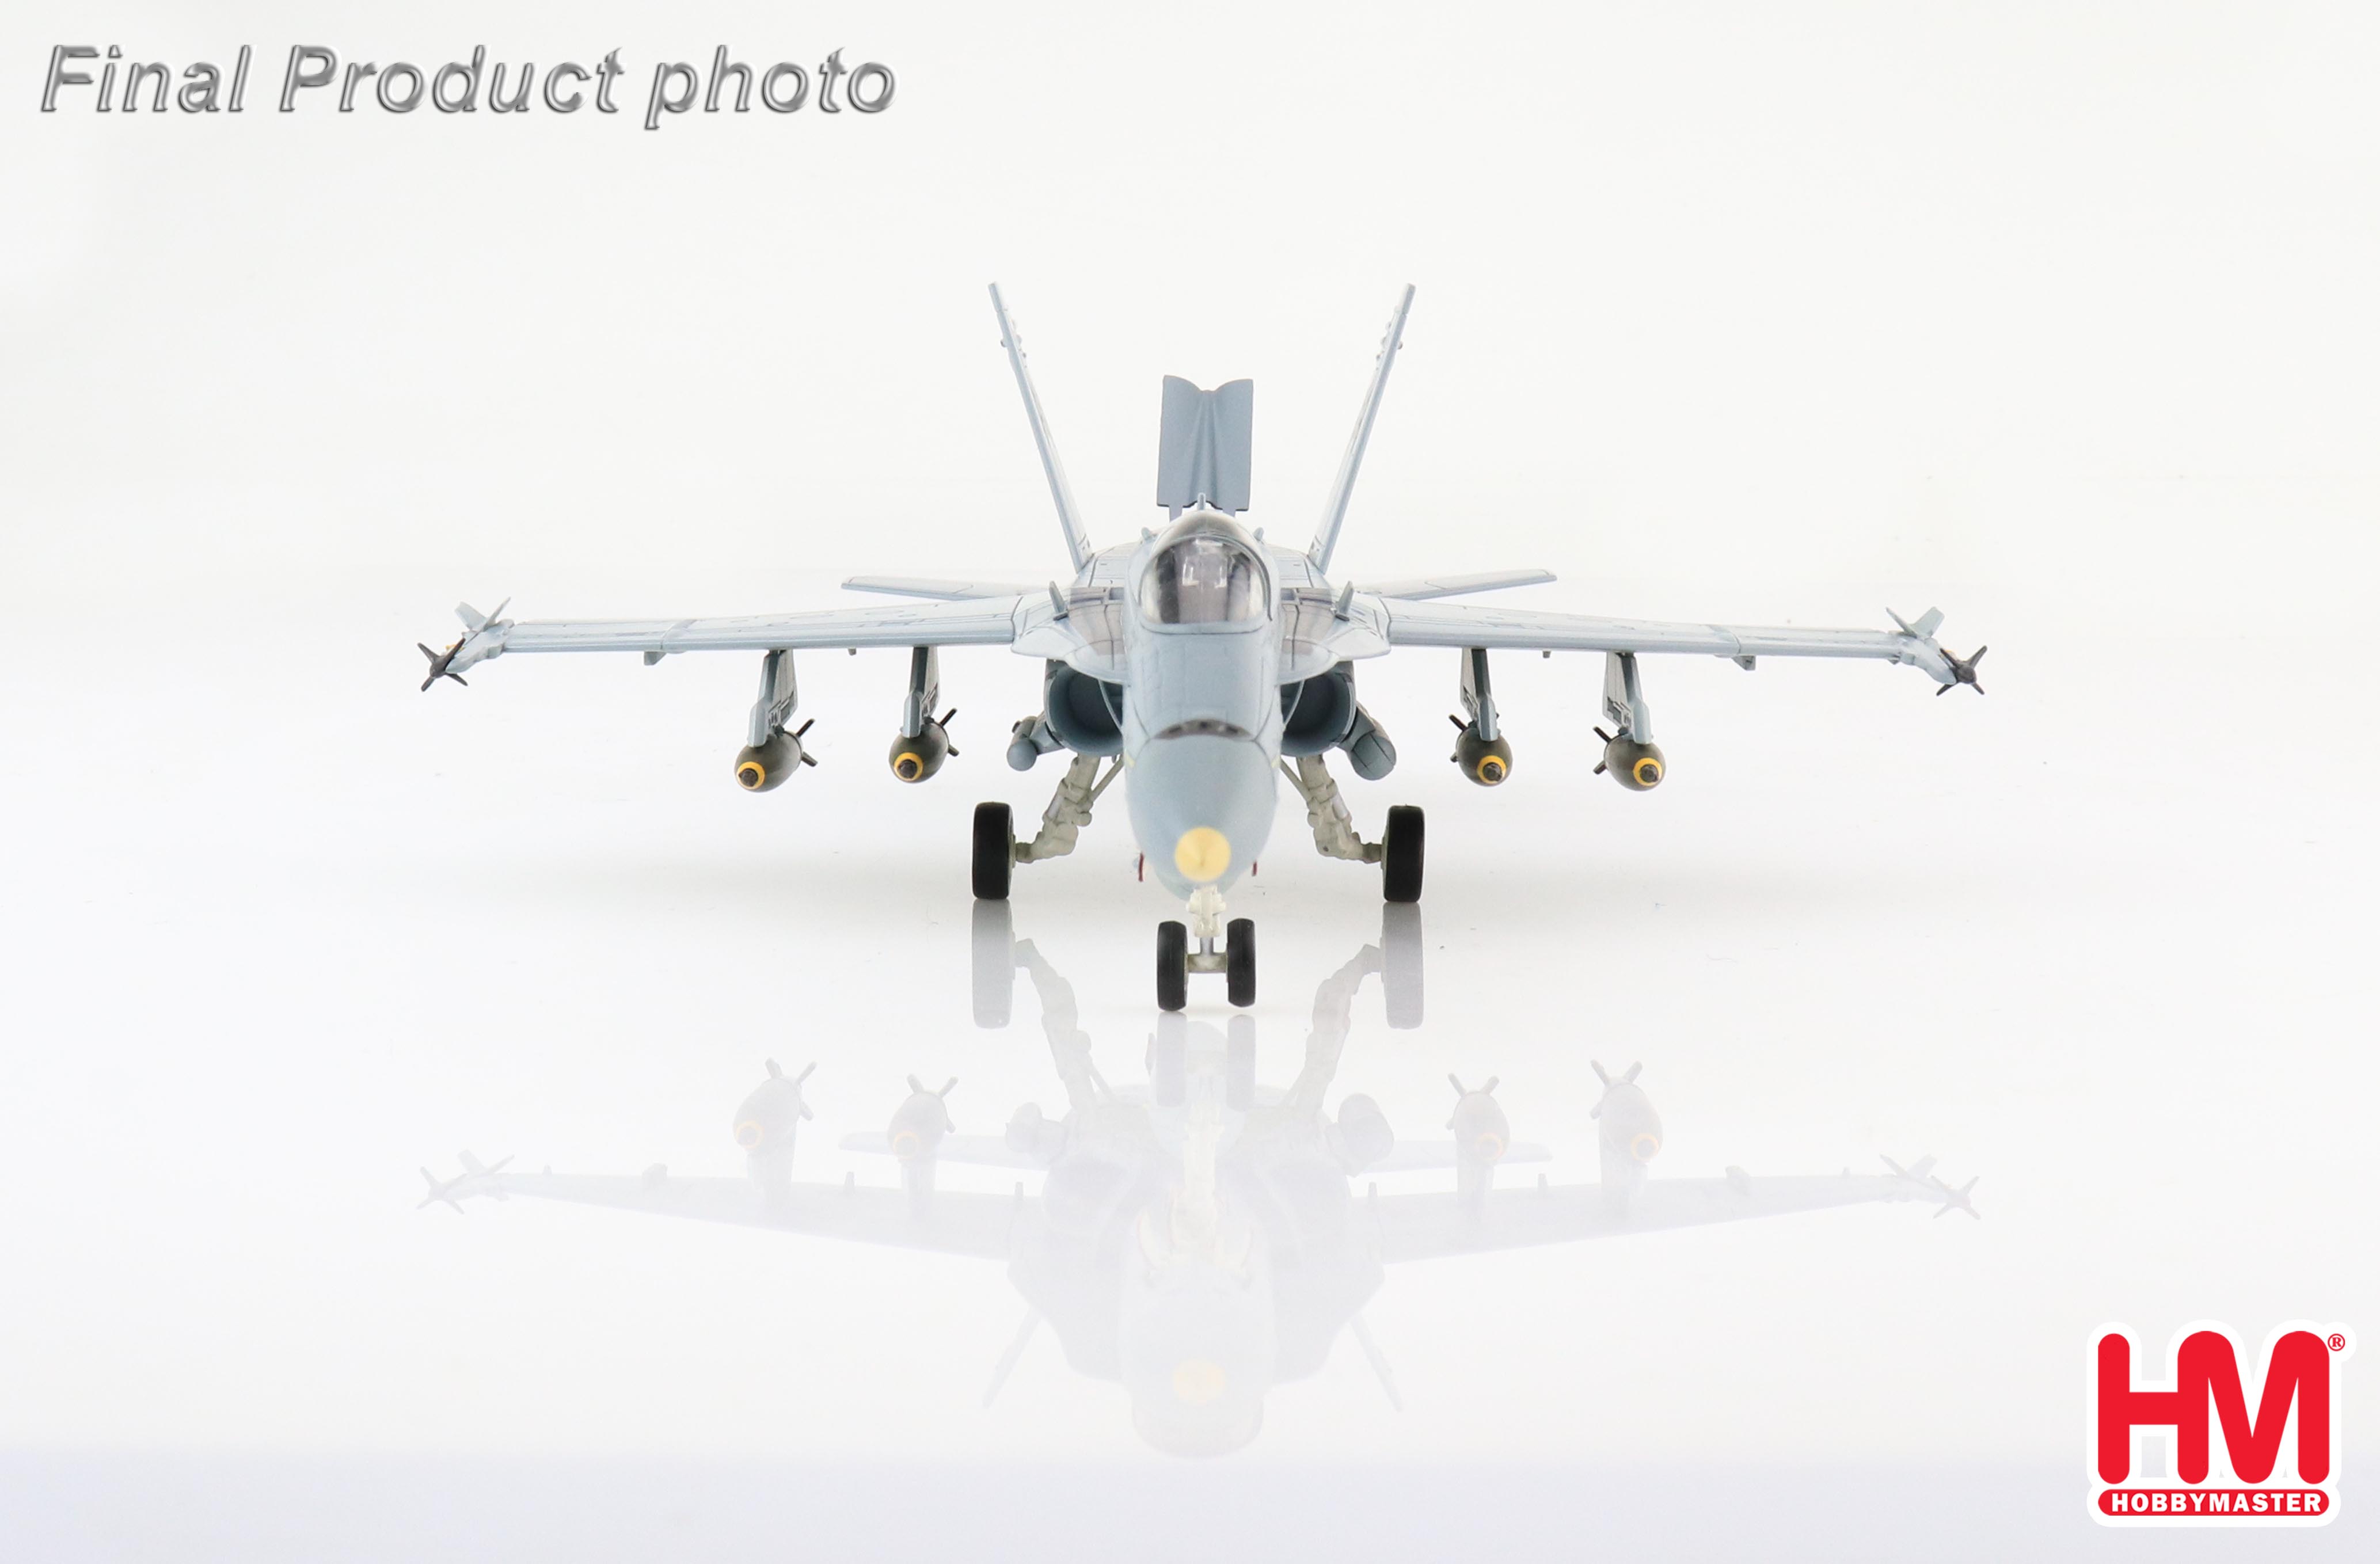 F/A-18C Hornet 